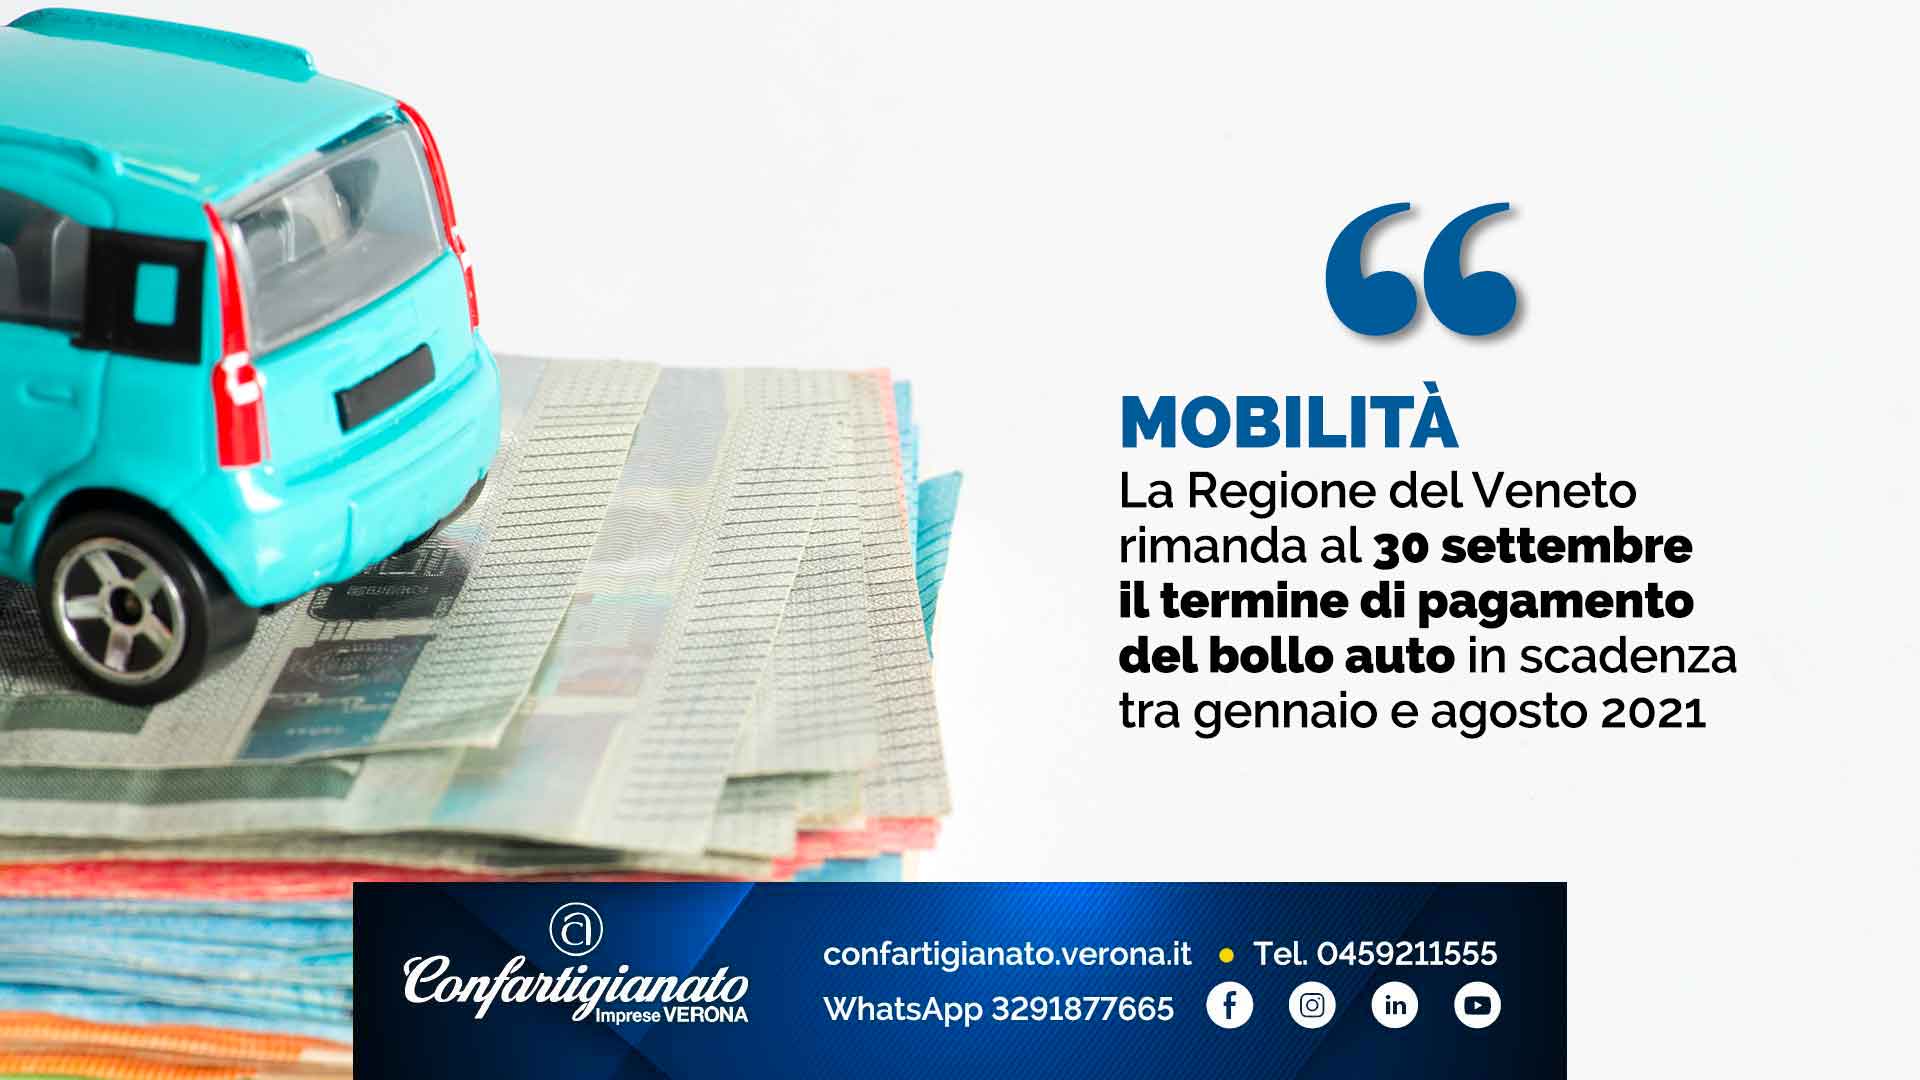 MOBILITA' – La Regione del Veneto rimanda al 30 settembre il termine di pagamento del bollo auto in scadenza tra gennaio e agosto 2021